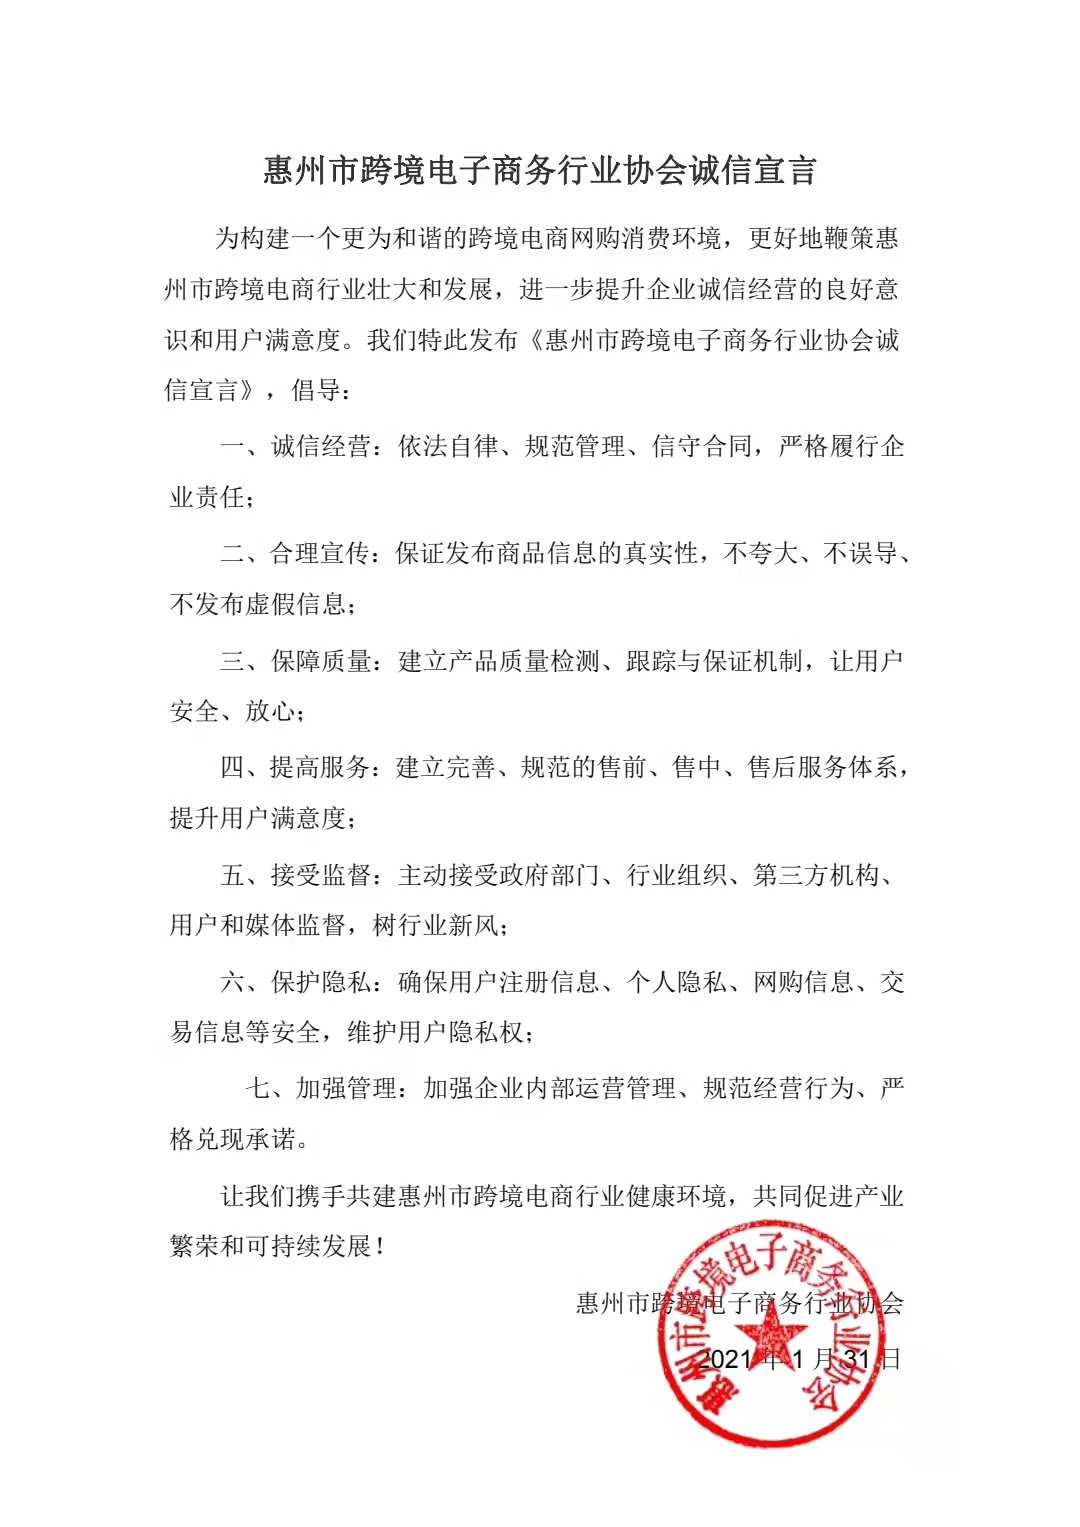 惠州市跨境电商行业协会诚信宣言(图1)